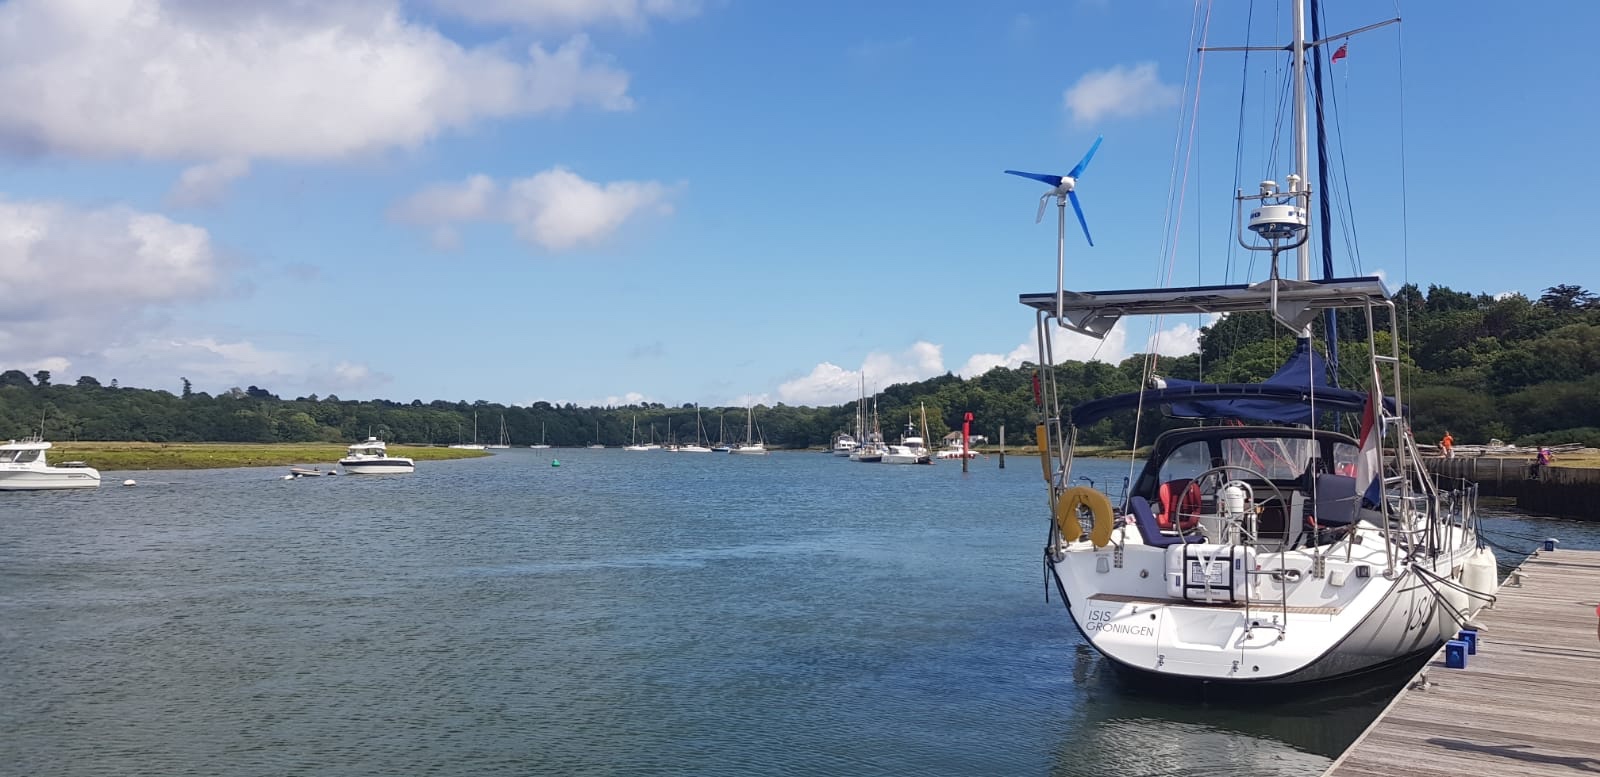 Zeilen varen vakantie engeland reizen België wereld vertrekken zeilboot boot